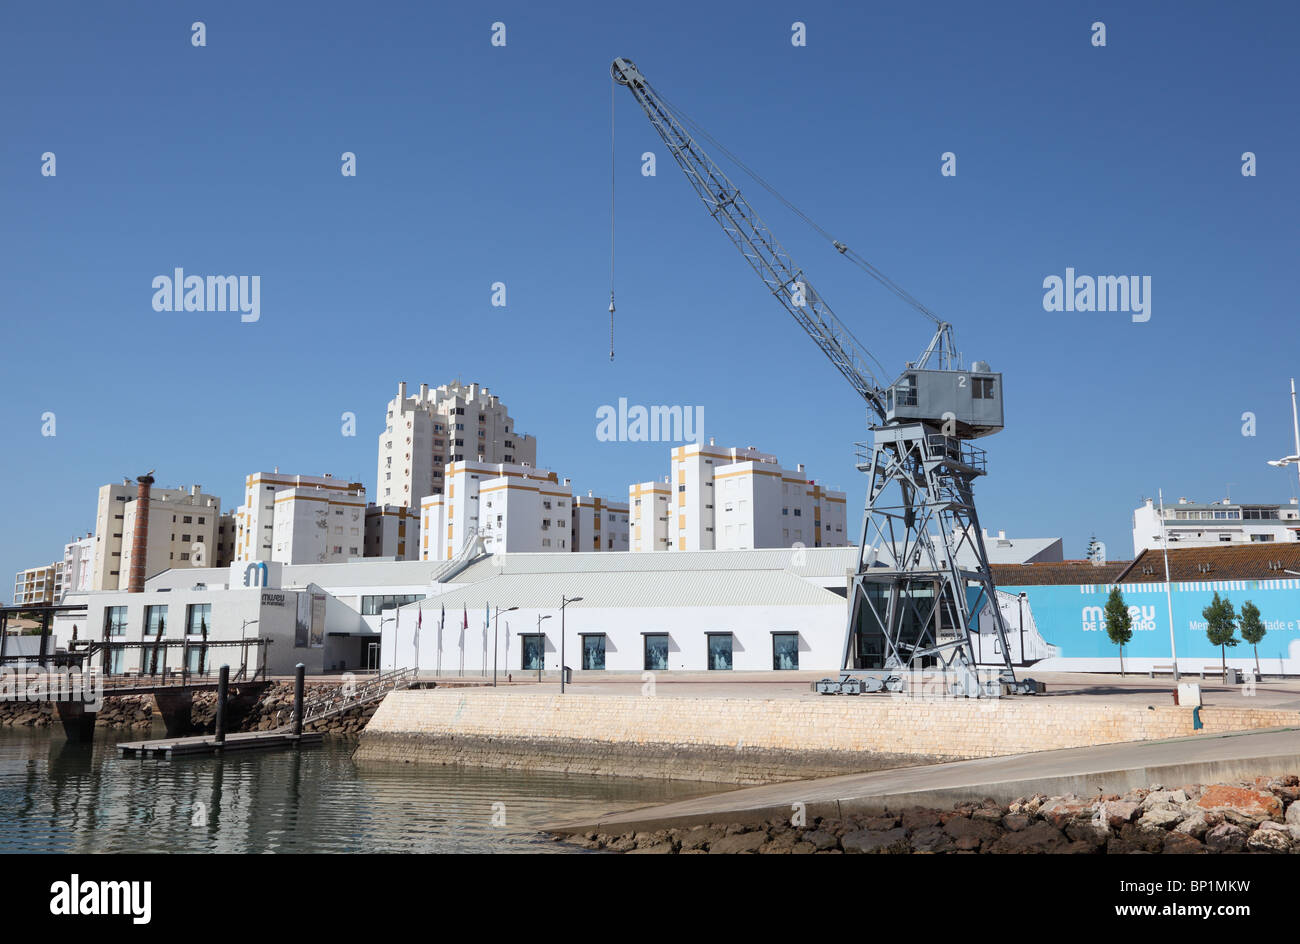 Crane in the old docks of Portimao, Portugal. Stock Photo